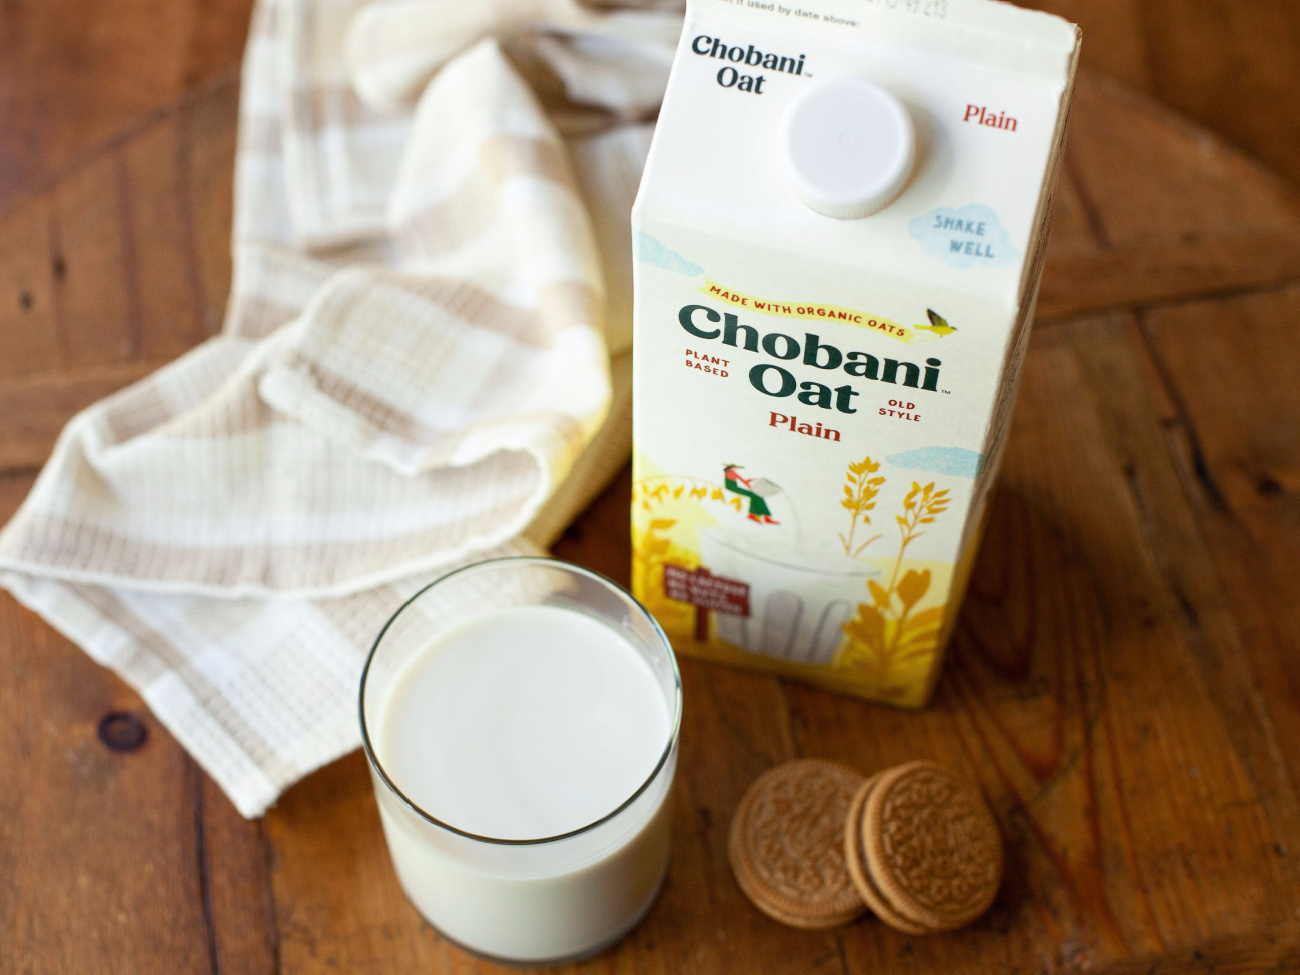 Get Chobani Oat Milk For Just $2 At Publix